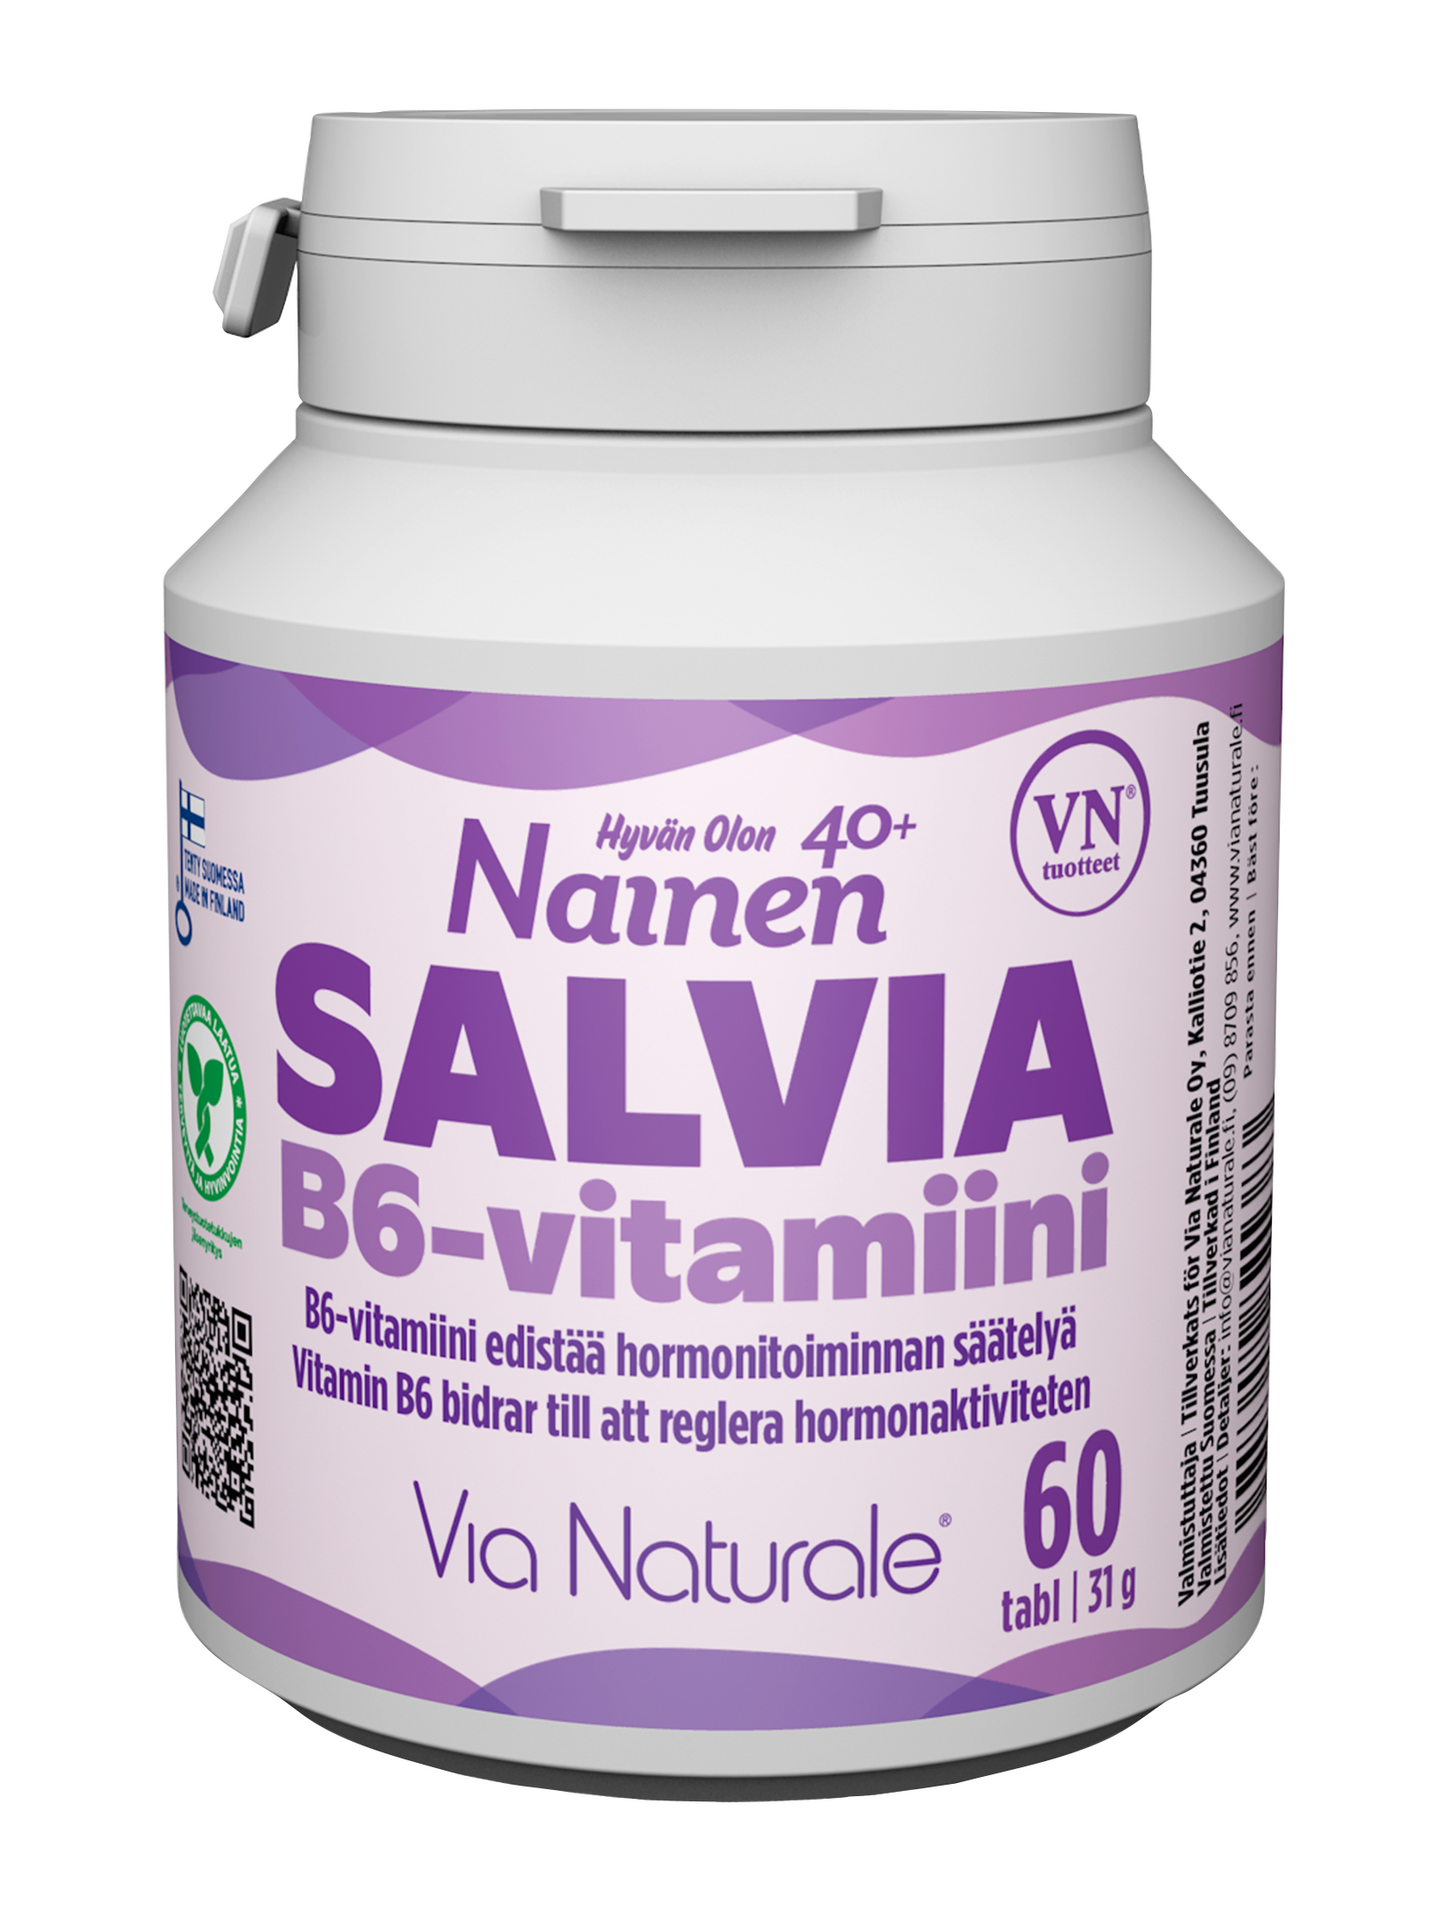 Hyvän Olon Nainen 40+ Salvia B6-vitamiini 60 tabl 31g